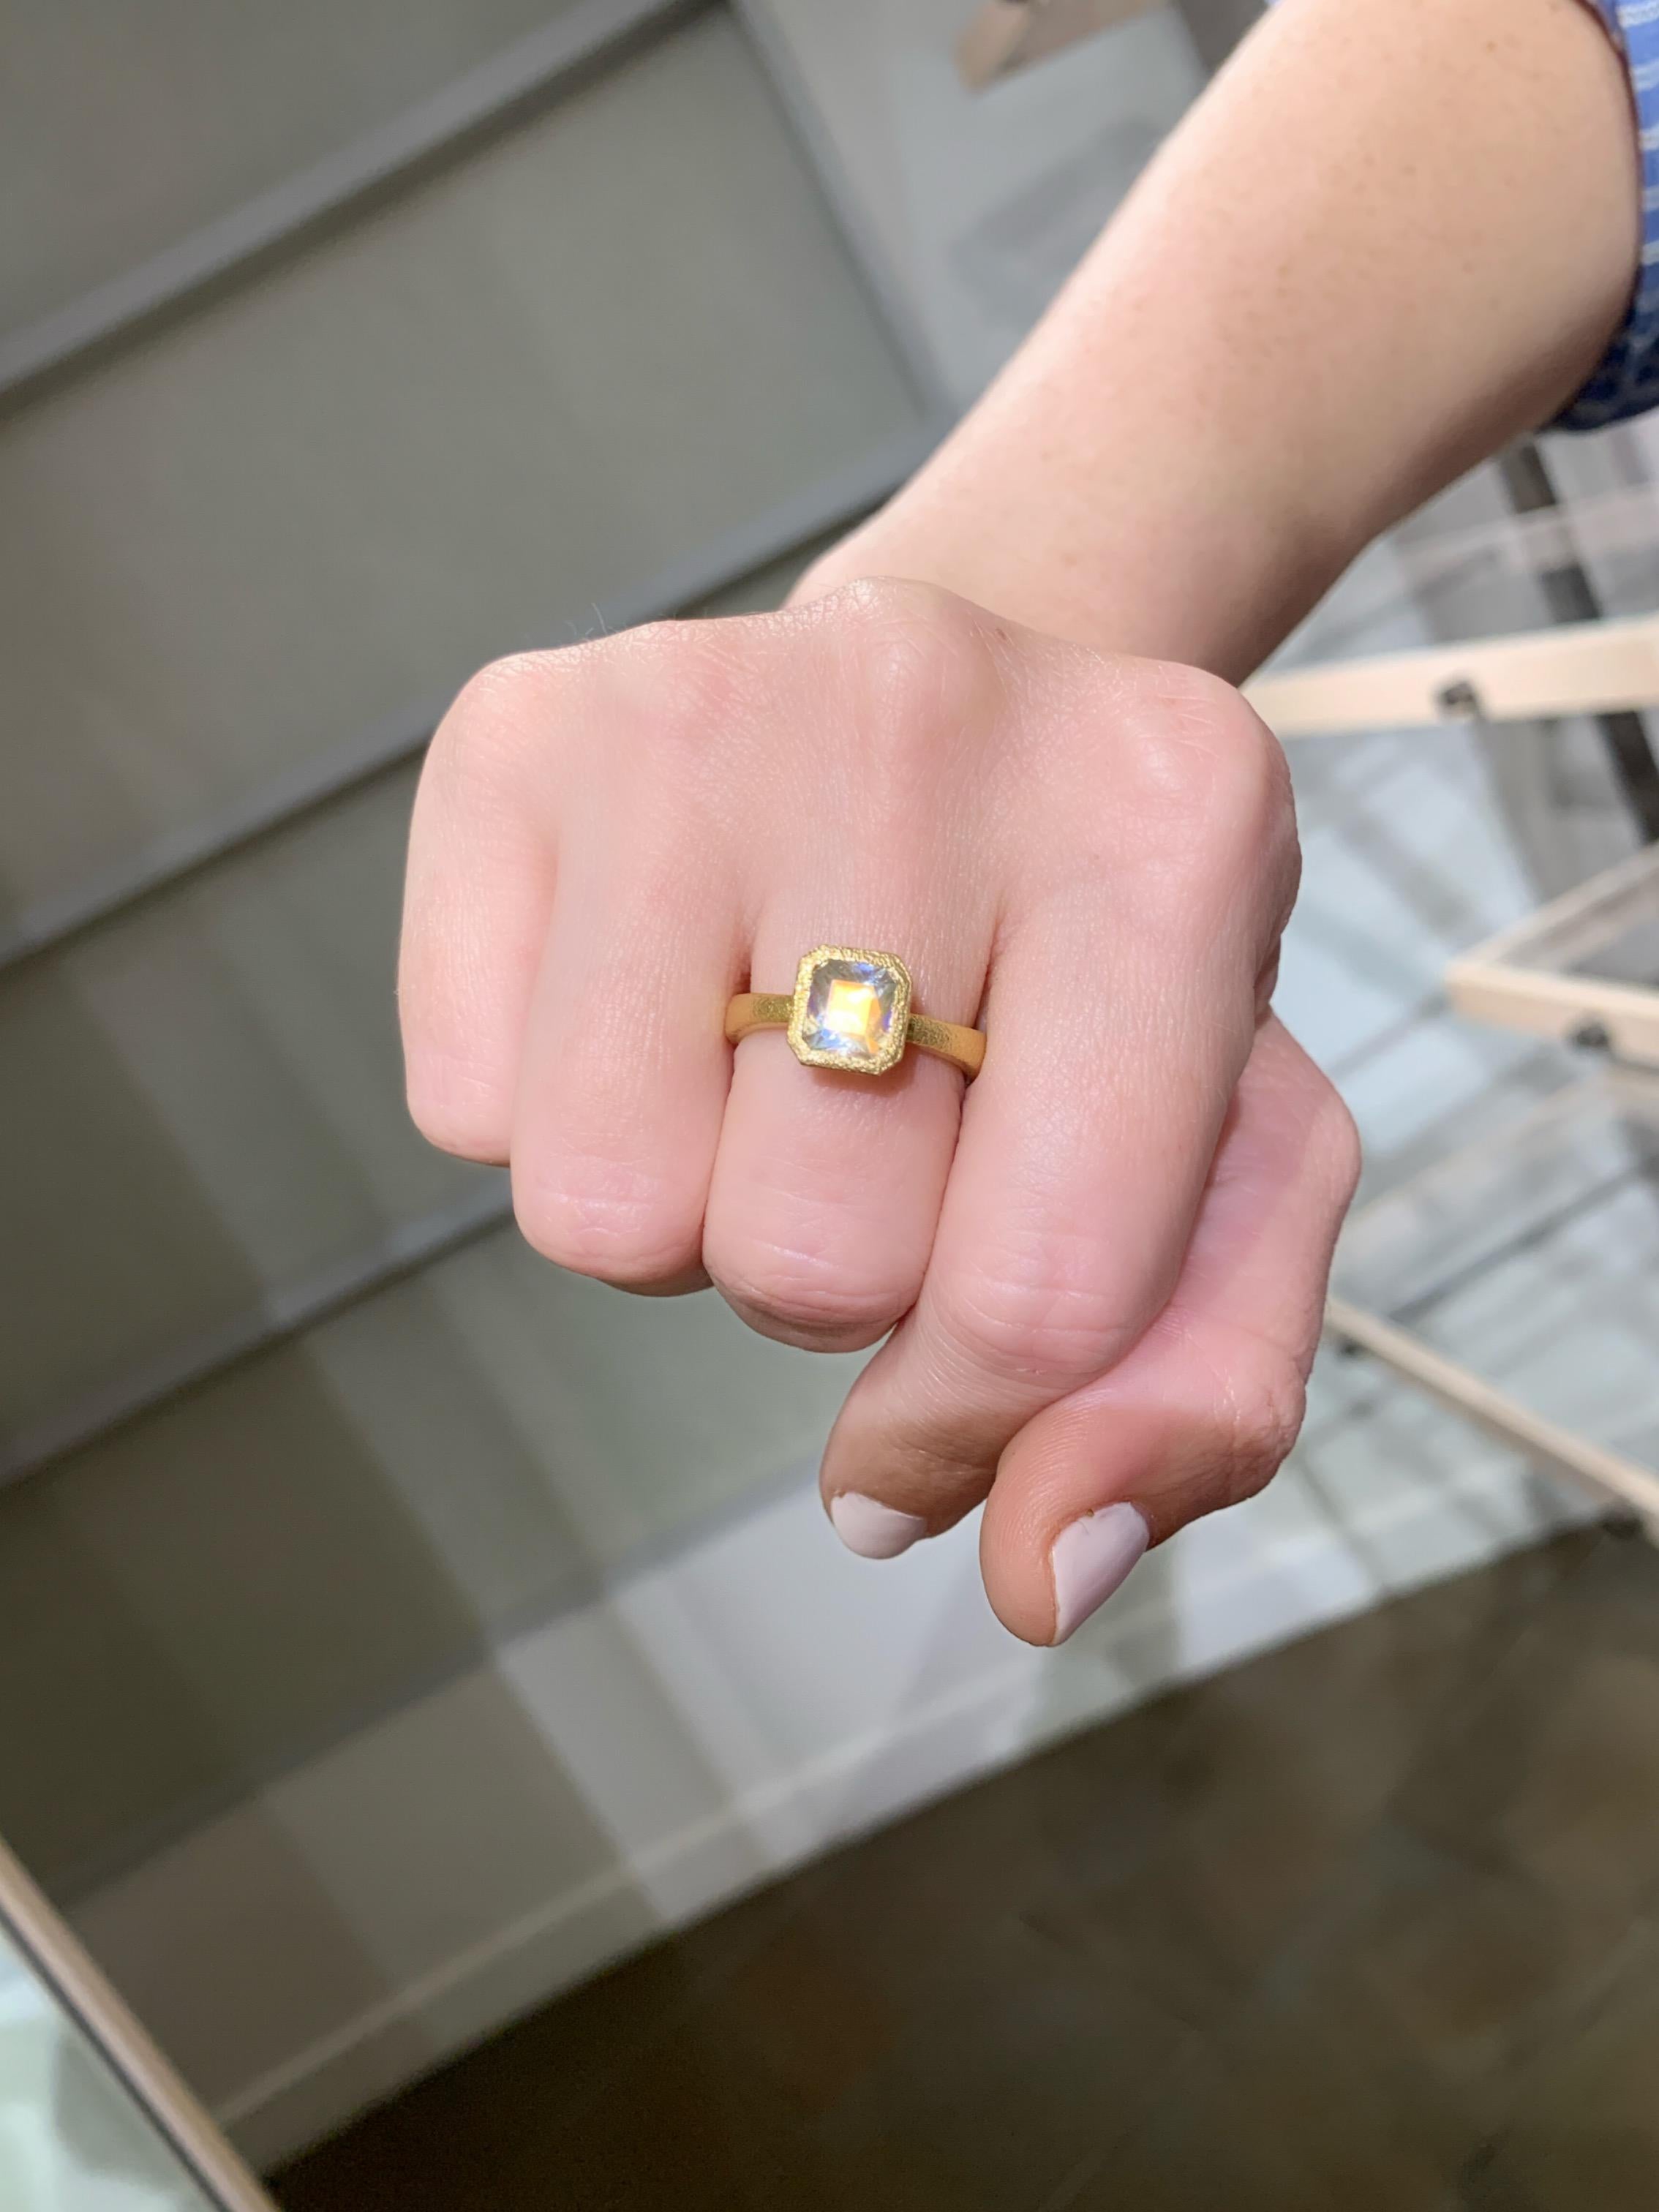 Einzigartiger Ring, handgefertigt vom renommierten Schmuckhersteller Devta Doolan aus fein strukturiertem 18-karätigem Gelbgold mit einem außergewöhnlich feinen, orangefarbenen Regenbogen-Mondstein, der mit spektakulärer Regenbogen-Adulareszenz und